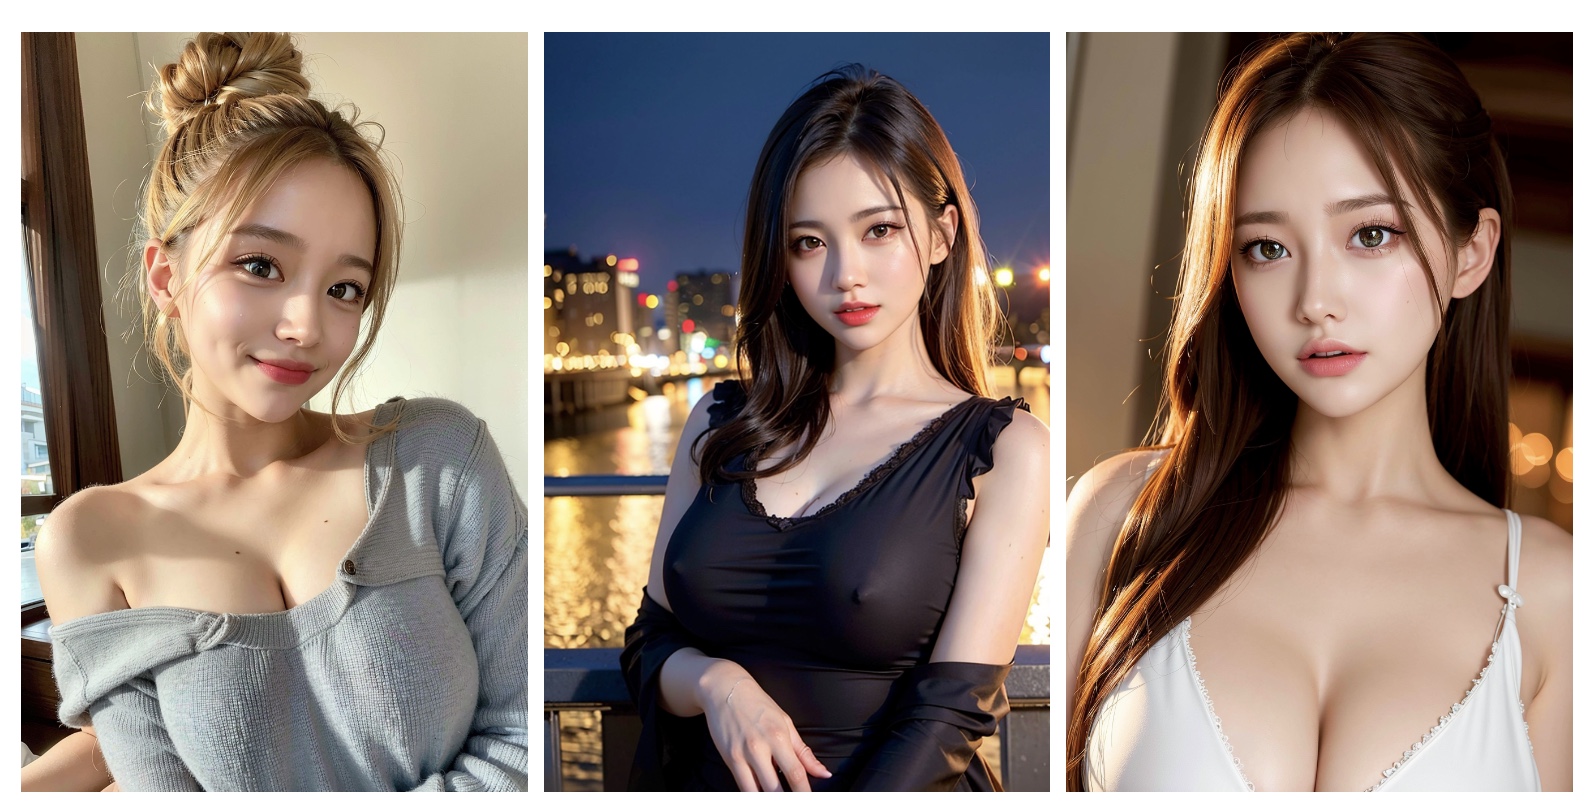 Fotos von drei jungen Frauen, die komplett mit dem KI Bildgenerator Stable Diffusion erstellt wurden.